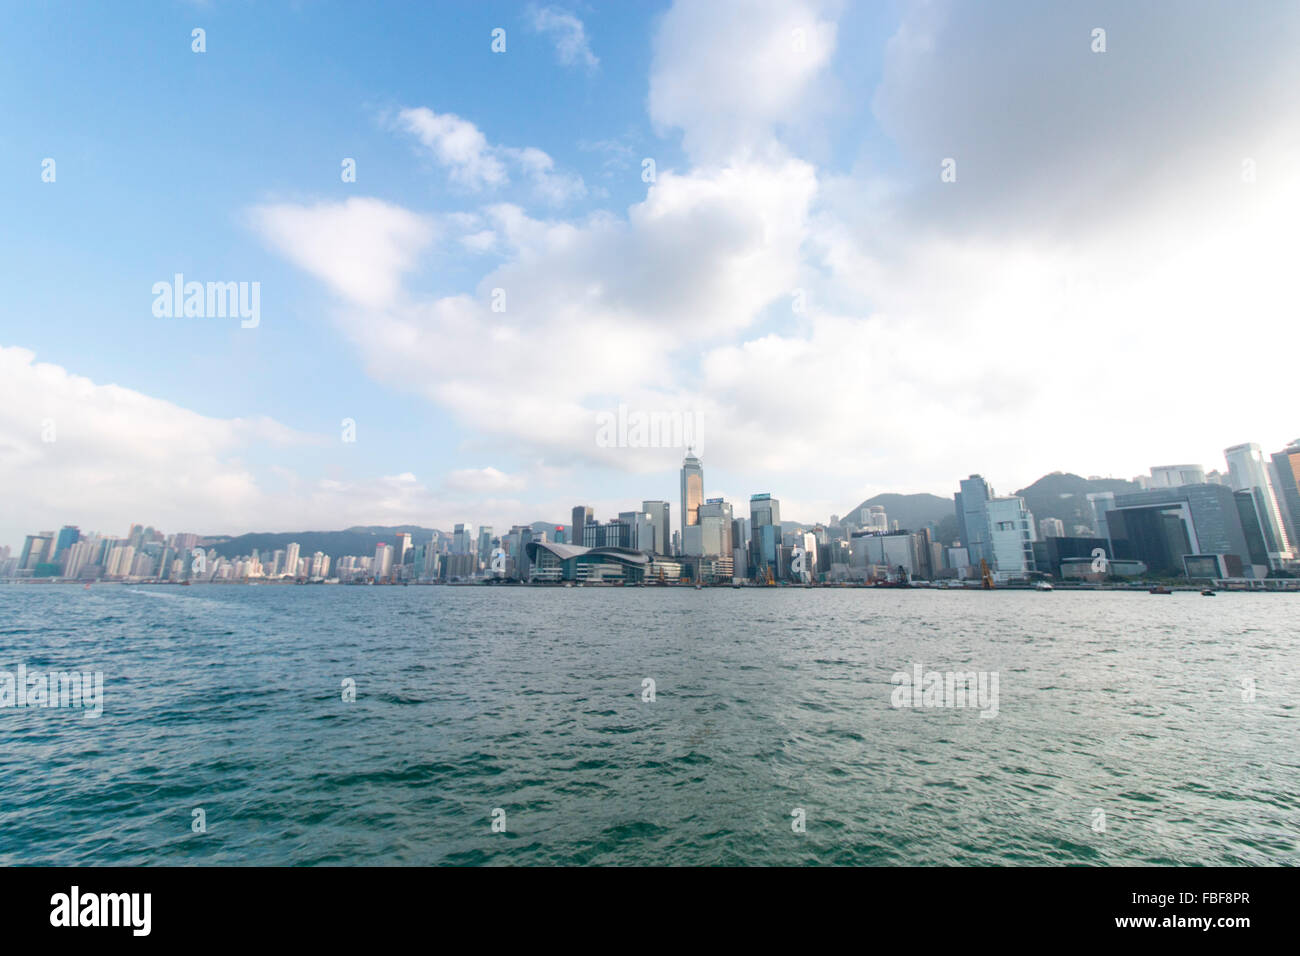 La vista panorámica de la isla de Hong Kong visto desde el lado de Kowloon Foto de stock